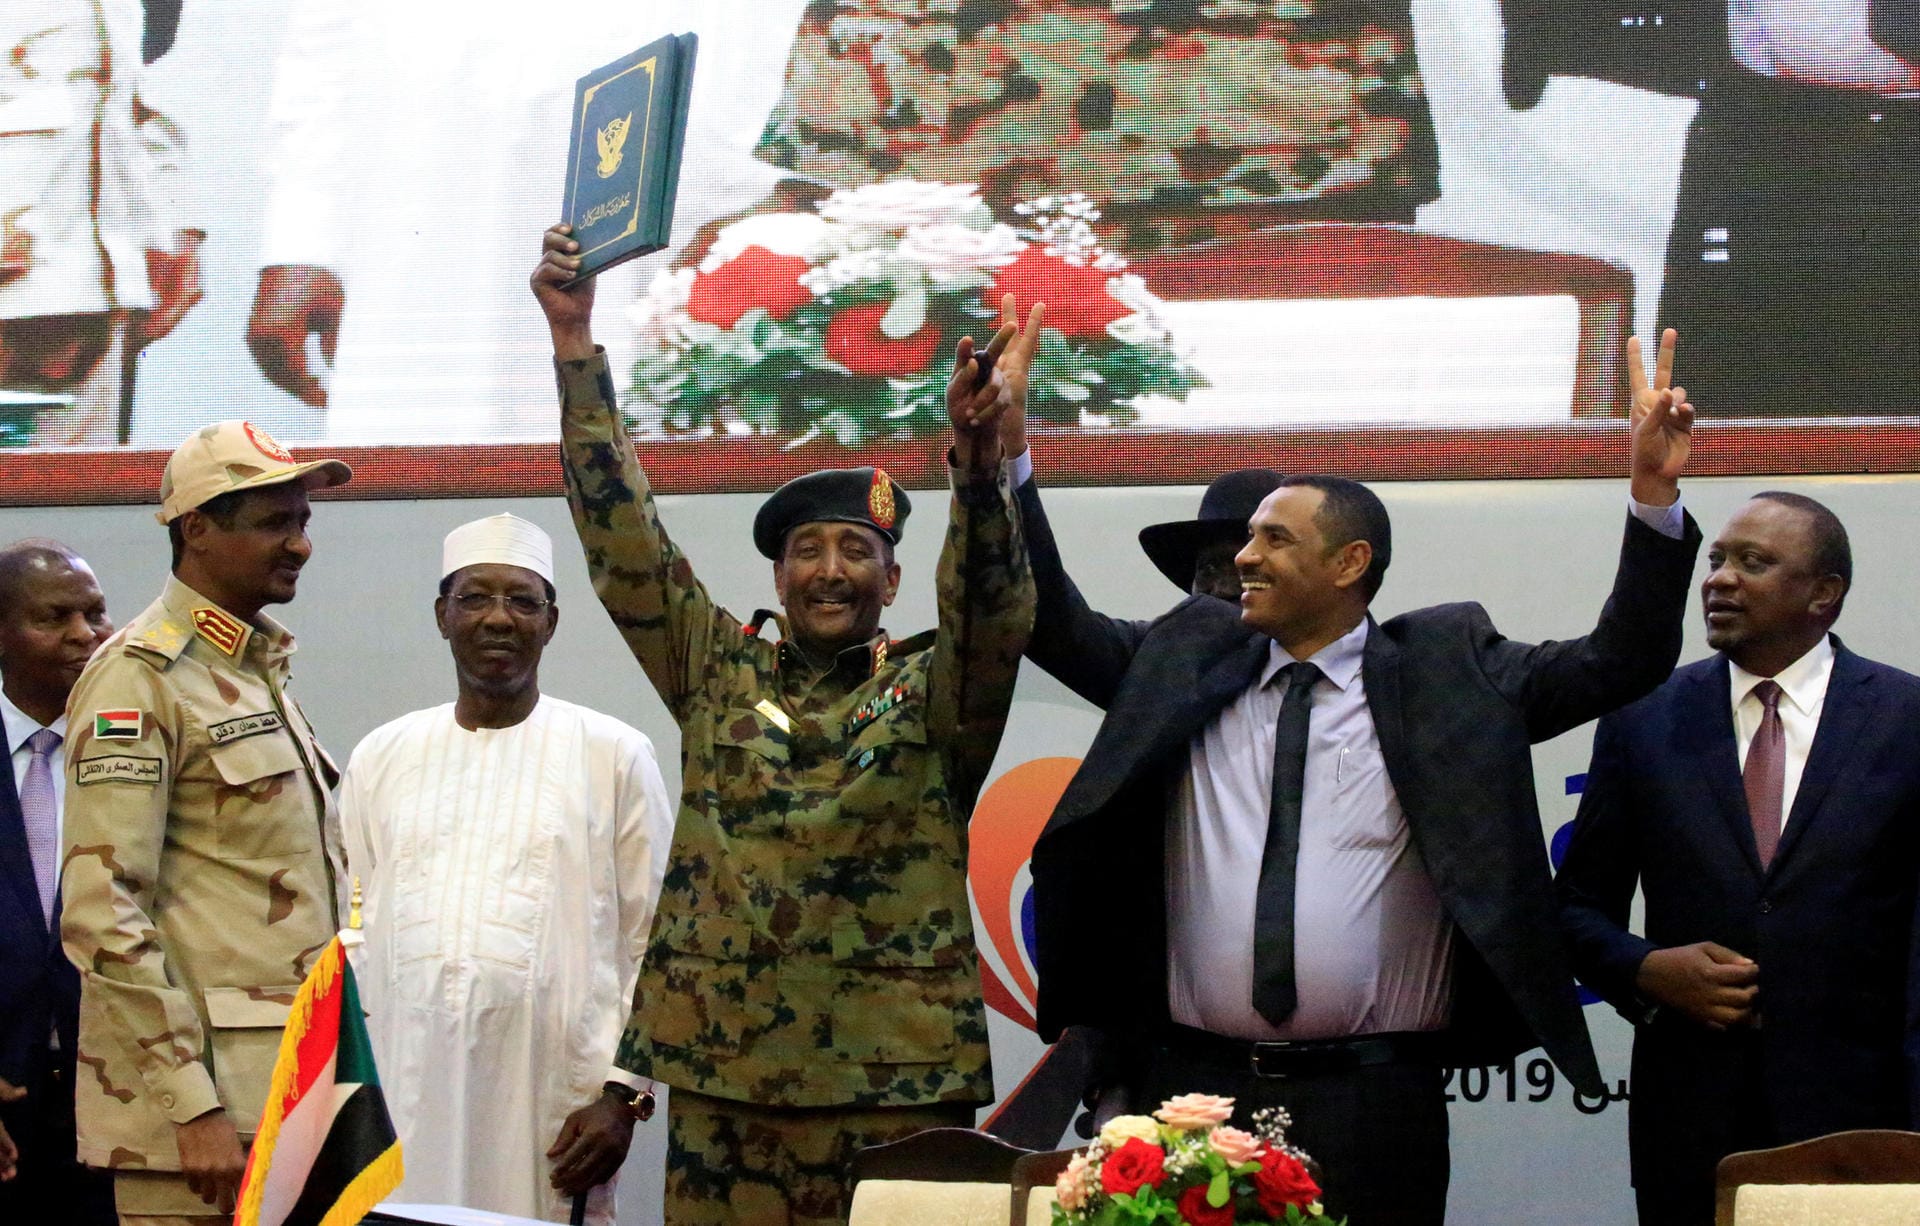 Historisches Abkommen: Der Chef des Militärischen Übergangsrates, Generalleutnant Abdel Fattah Al-Burhan, und der sudanesische Oppositionsführer Ahmad al-Rabiah, halten das Dokument in Händen, das die Machtteilung und einen Prozess zum Aufbau einer Demokratie im Sudan besiegelt.